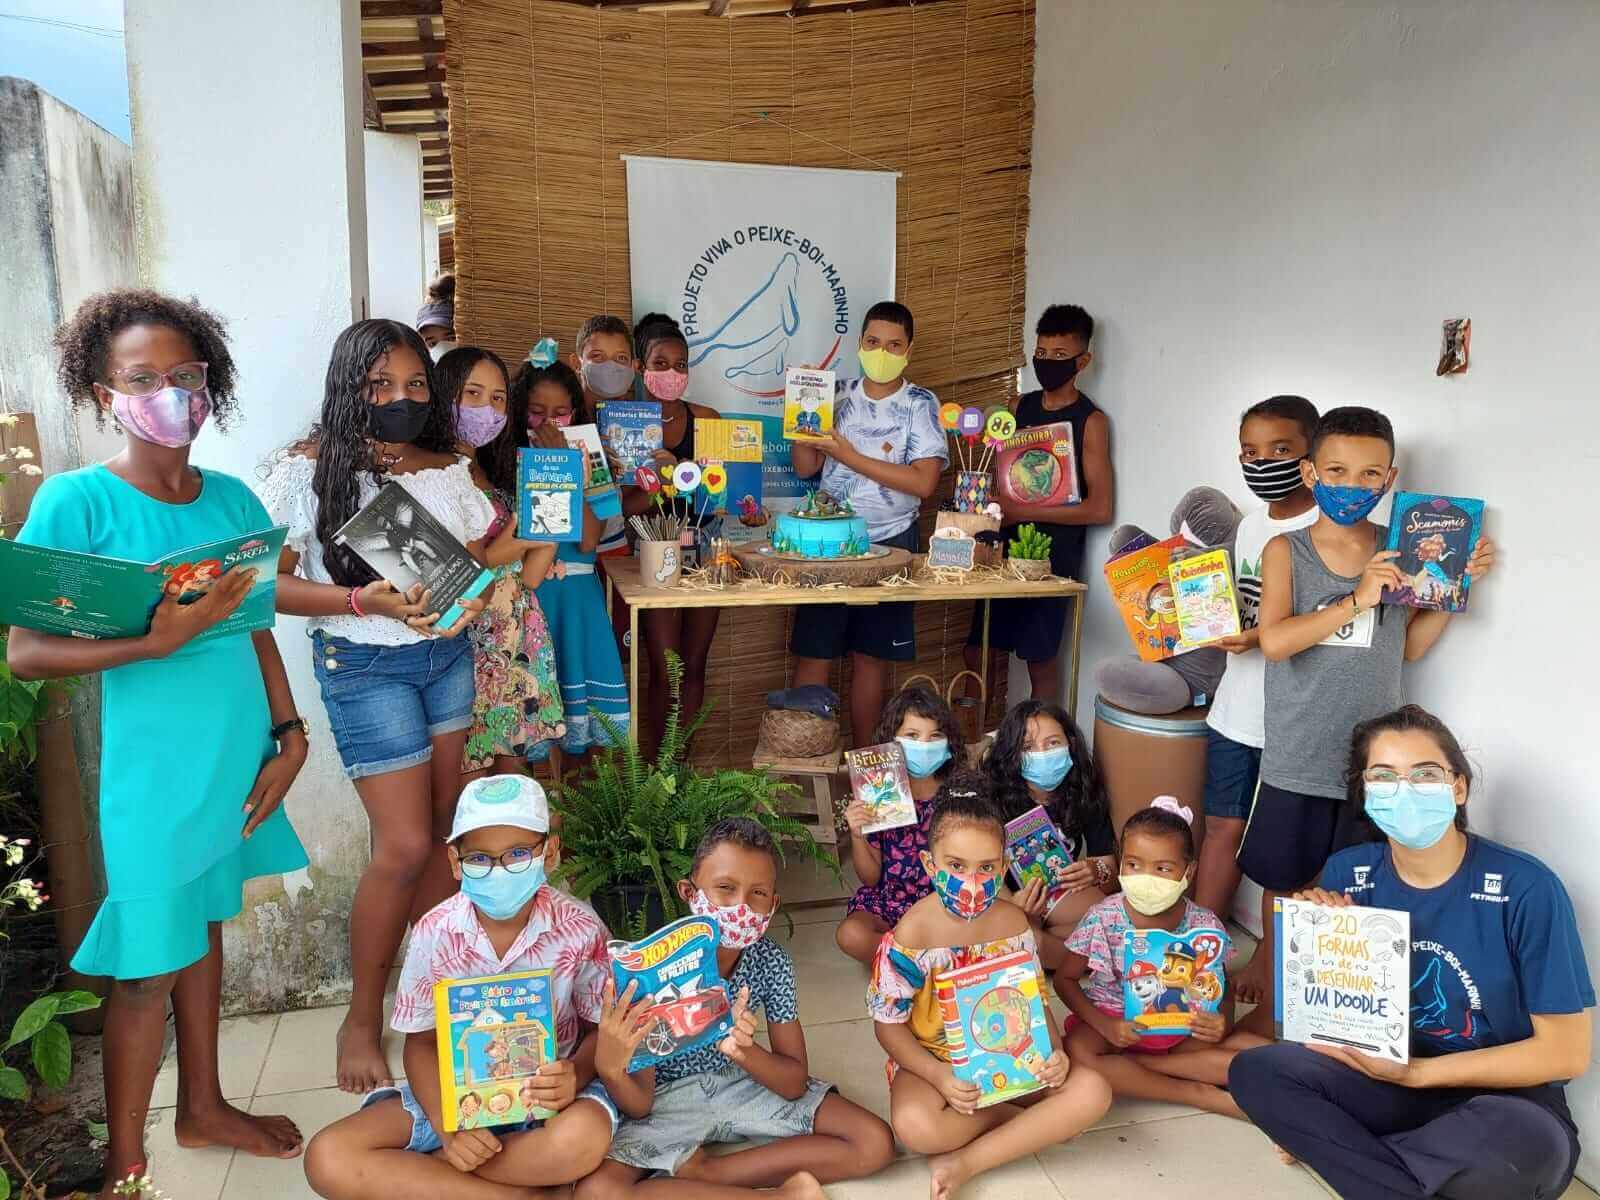 Crianças do povoado de Coqueiro, no litoral norte da Bahia, ganham biblioteca reformada